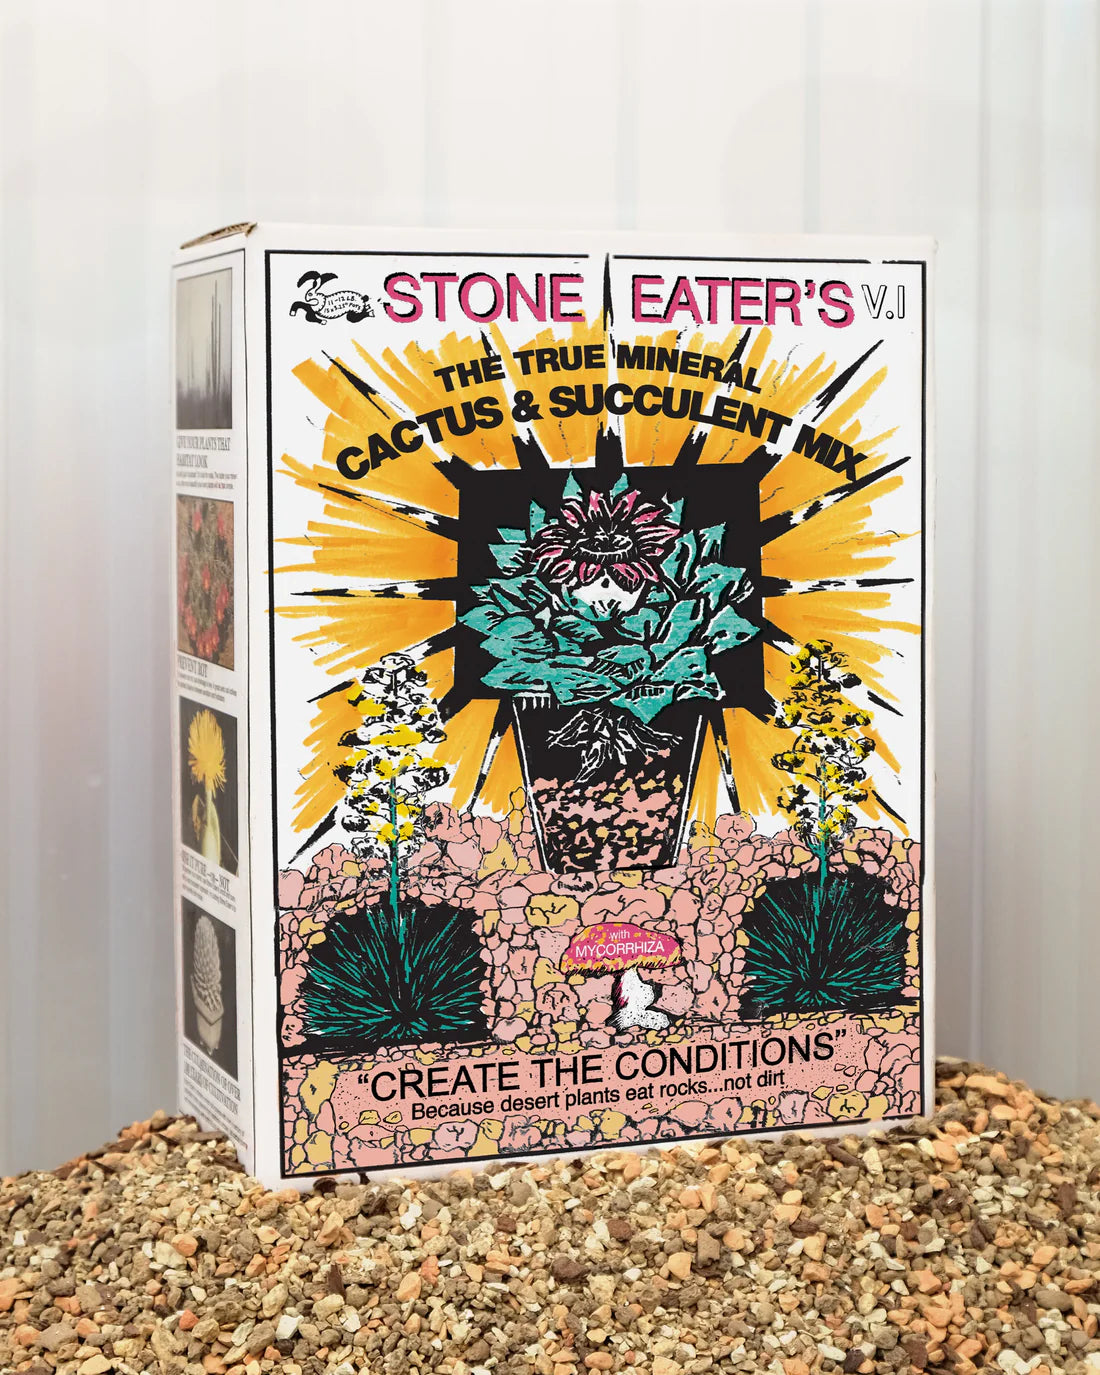 Stones Eaters v2.0 (White)